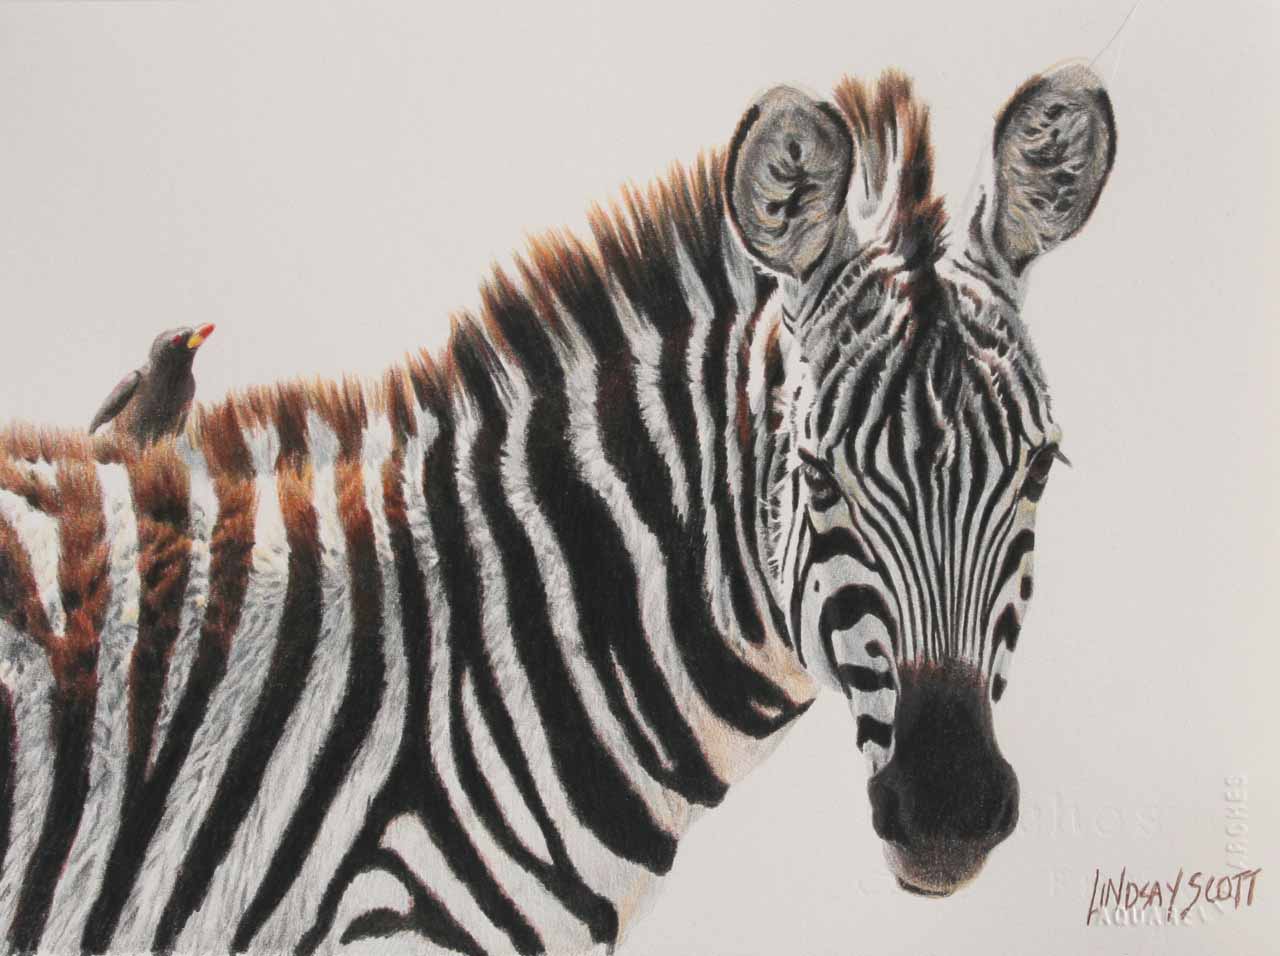 LS – Young Zebra © Lindsay Scott